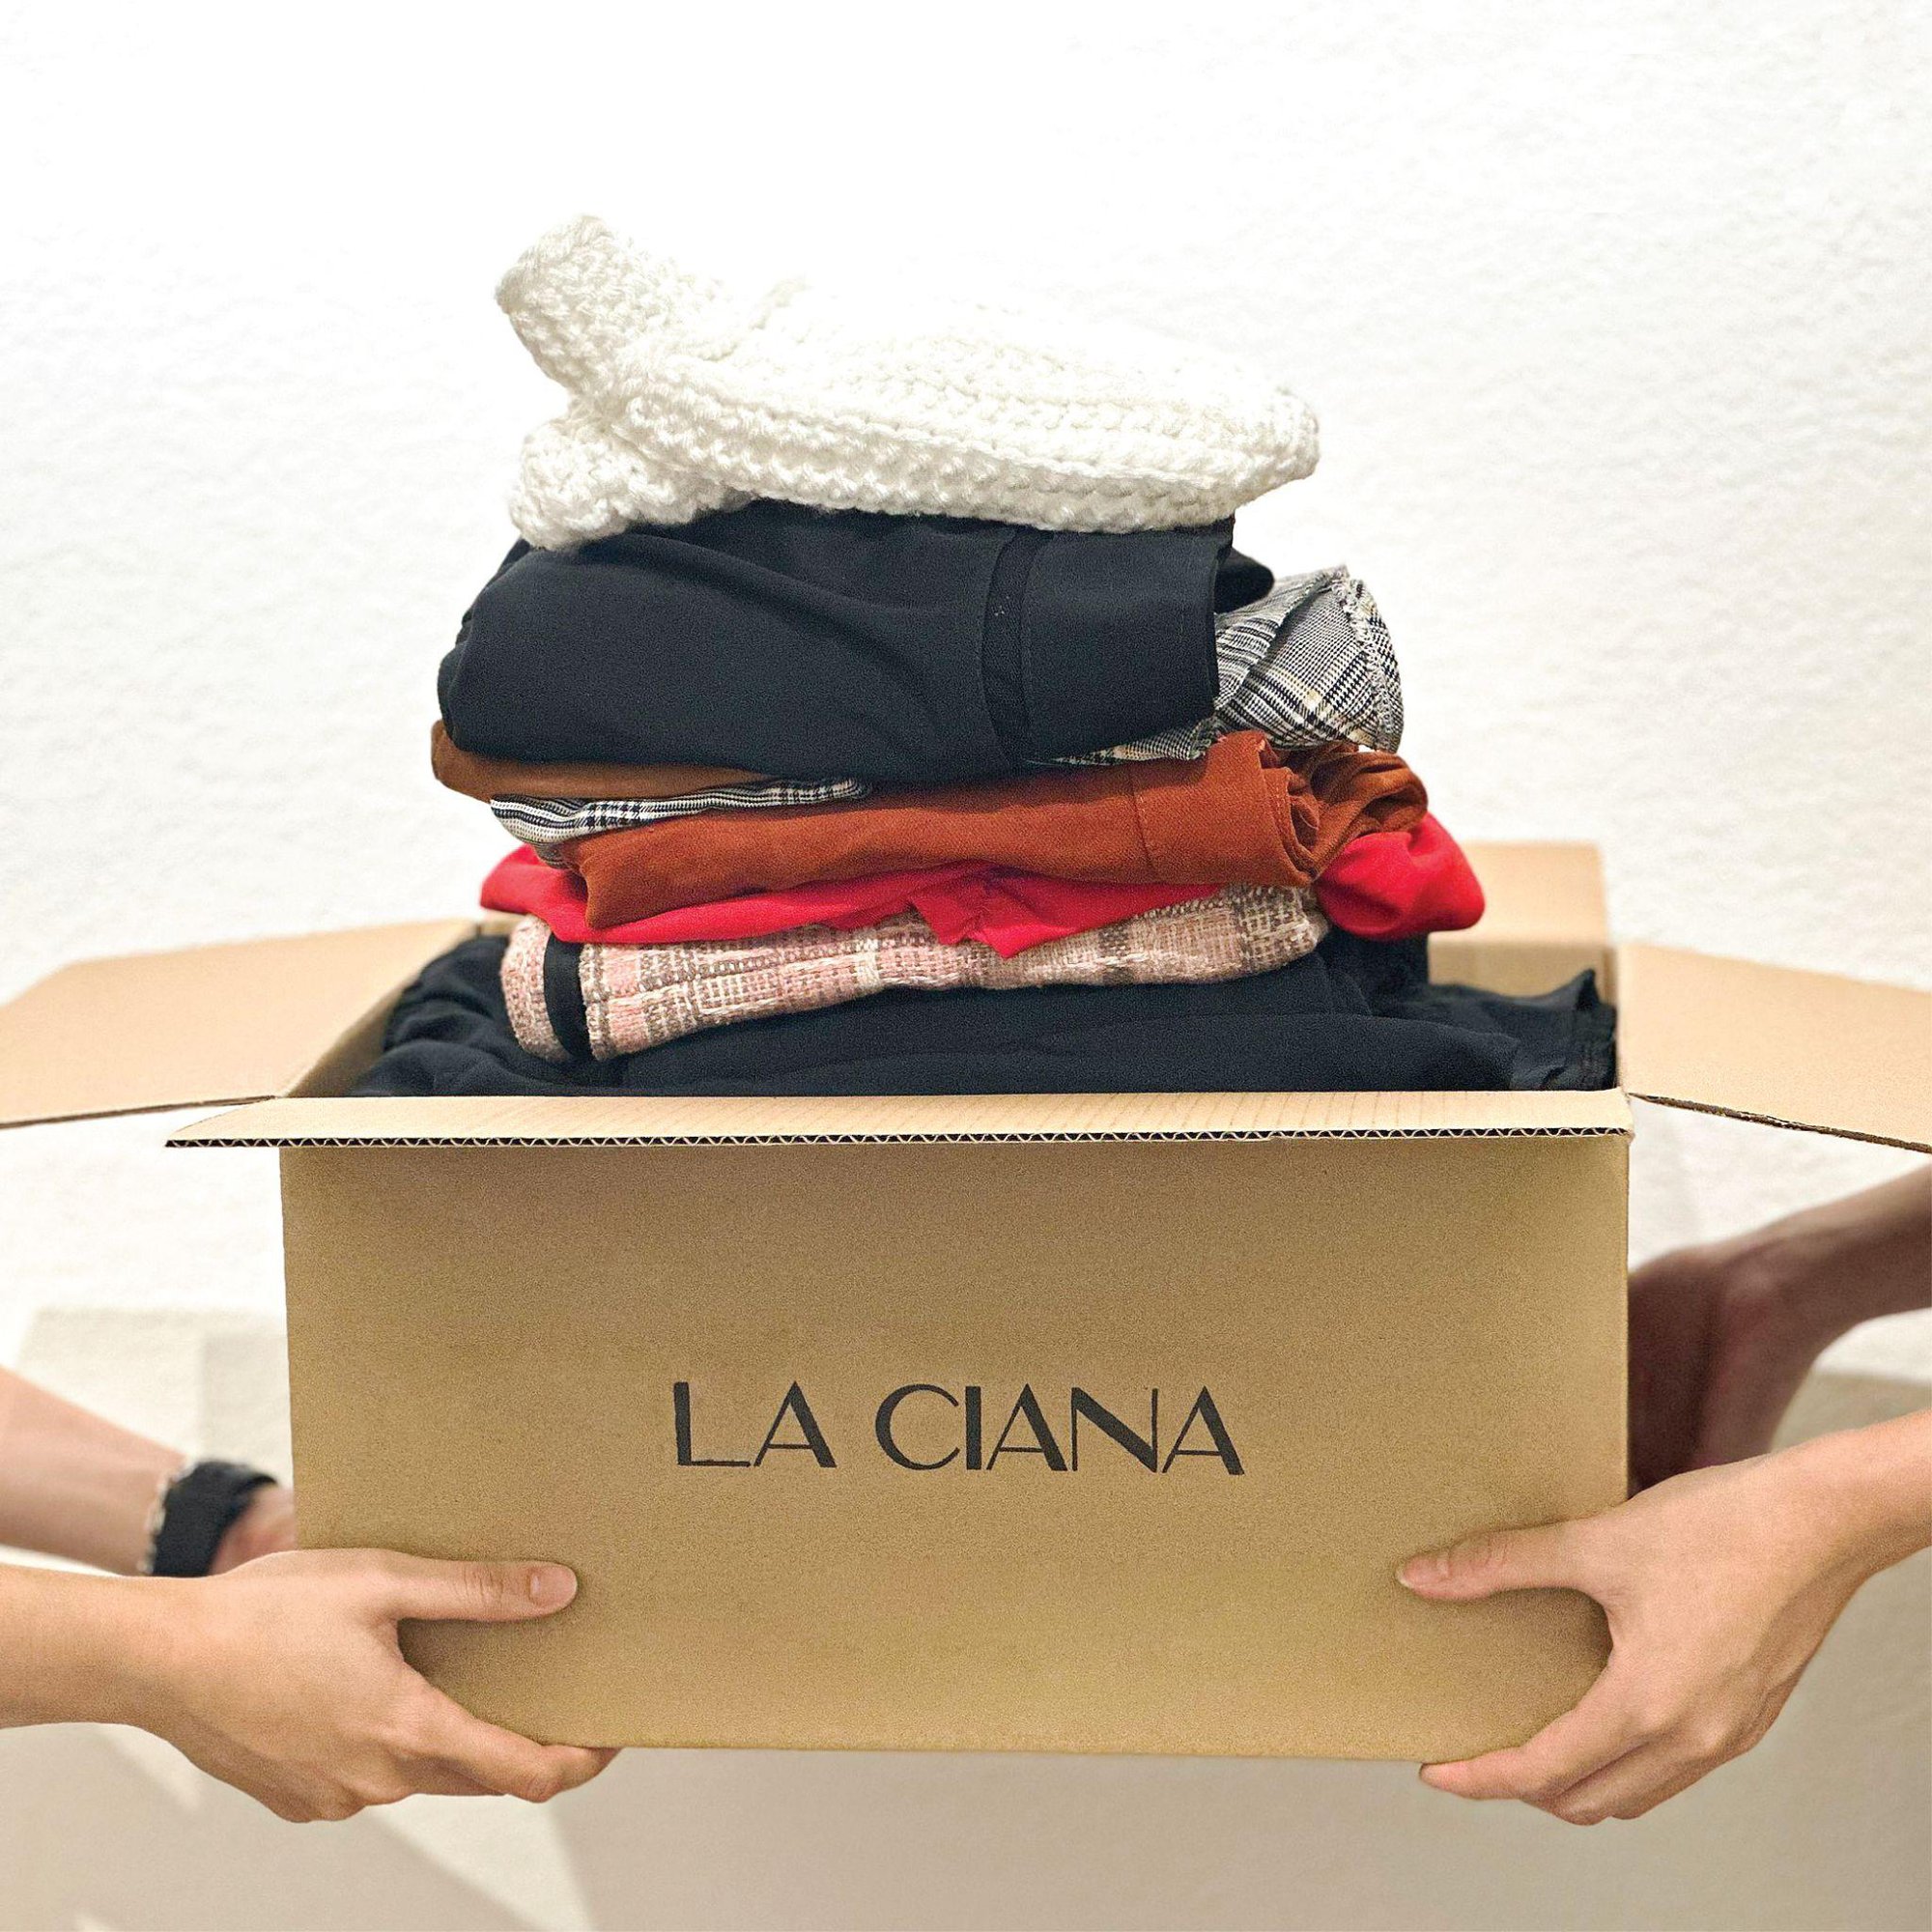 Chiến dịch thu cũ đổi mới quần áo của LA CIANA thu hút hàng nghìn người mang Tết ấm đến với người nghèo - Ảnh 3.